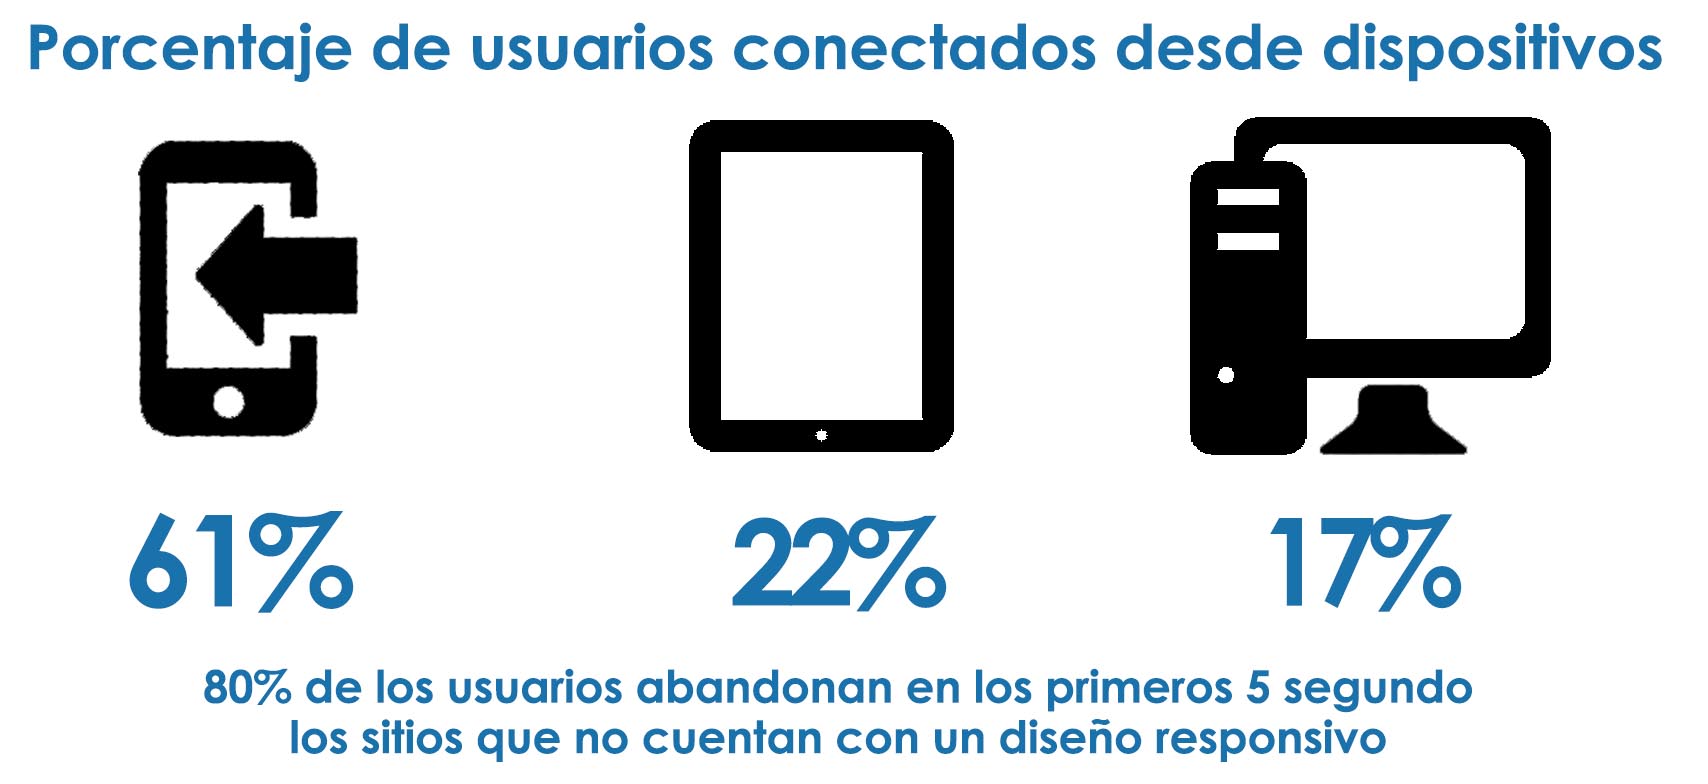 Porcentaje de usuarios conectados desde dispositivos